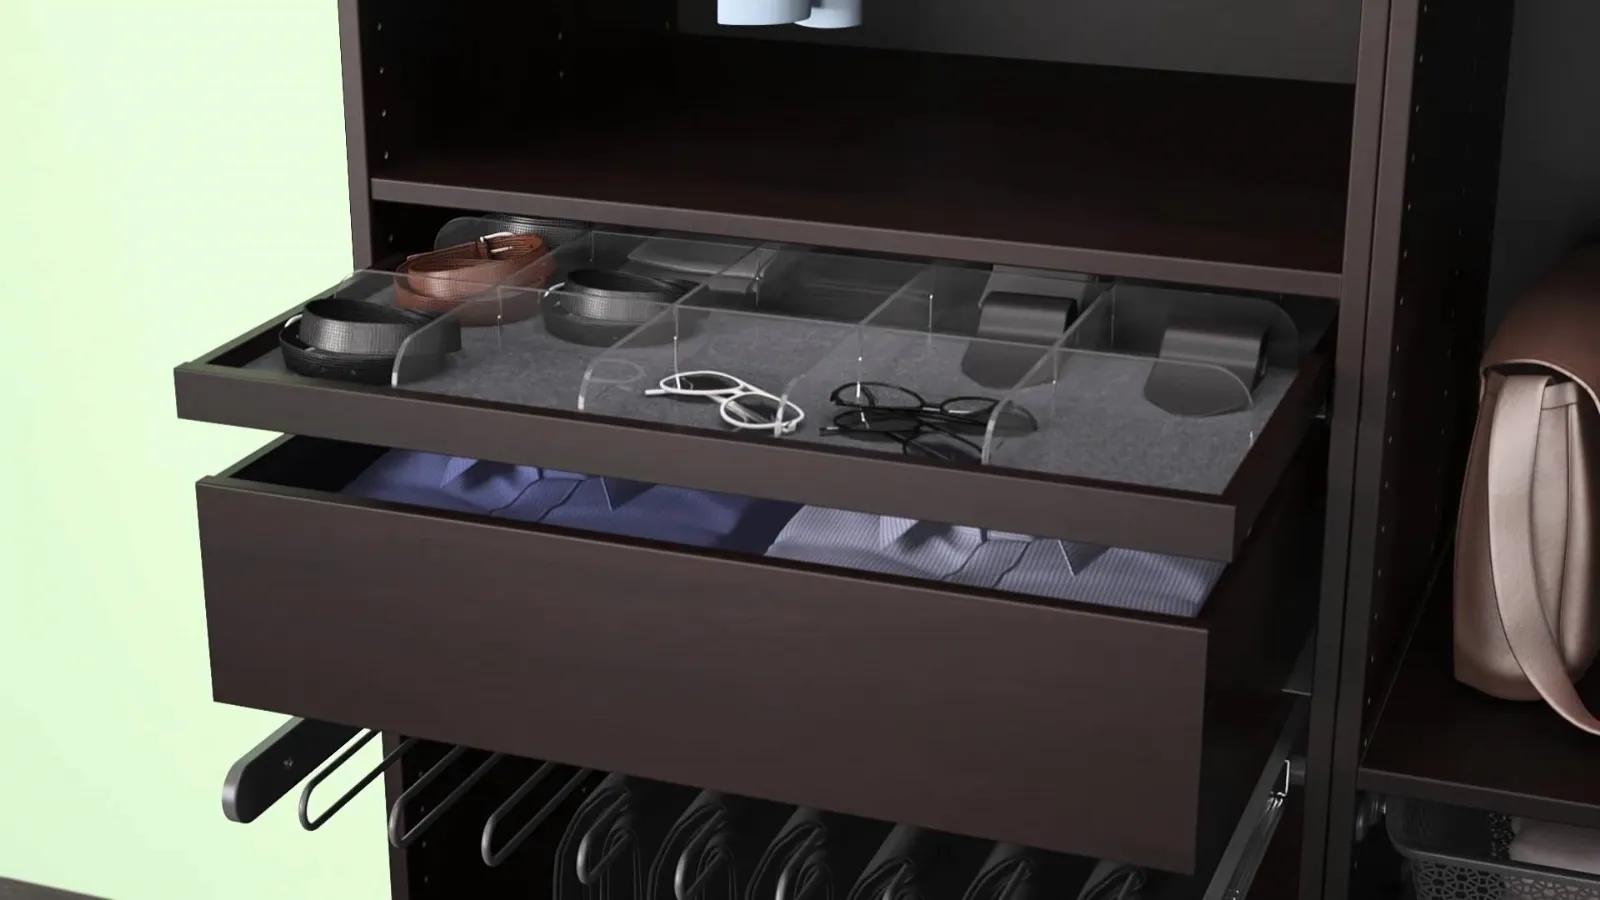 Ikea cassettiere per tutti i gusti complementi di arredo for Mobili ufficio ikea